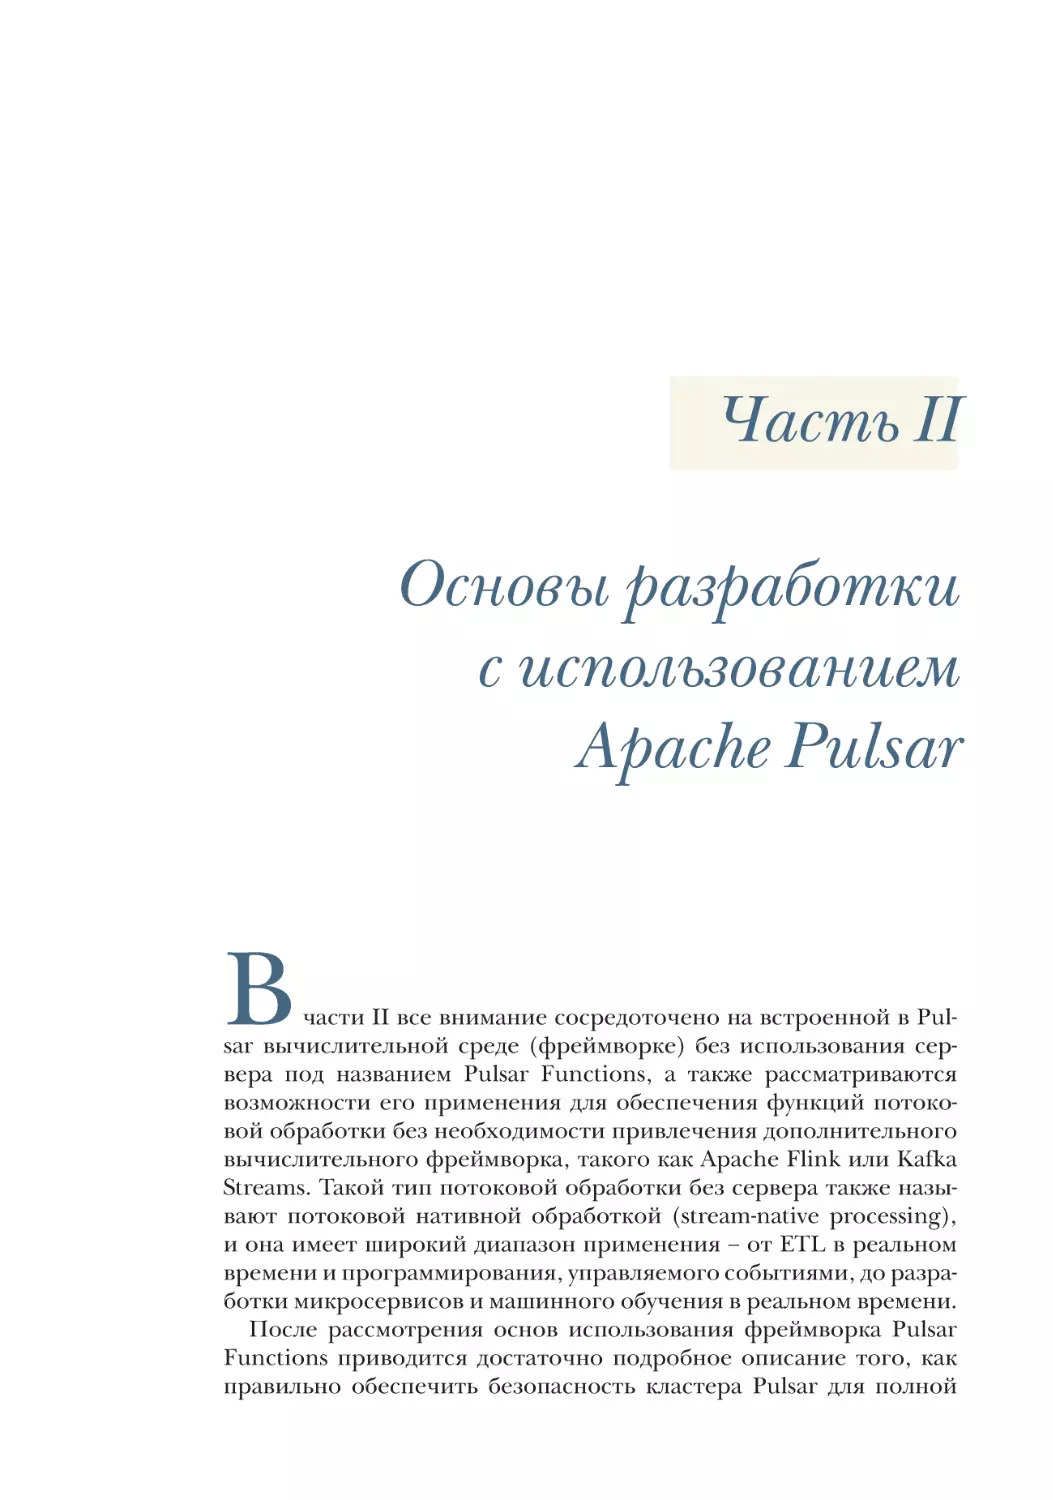 Часть II
Основы разработки с использованием Apache Pulsar